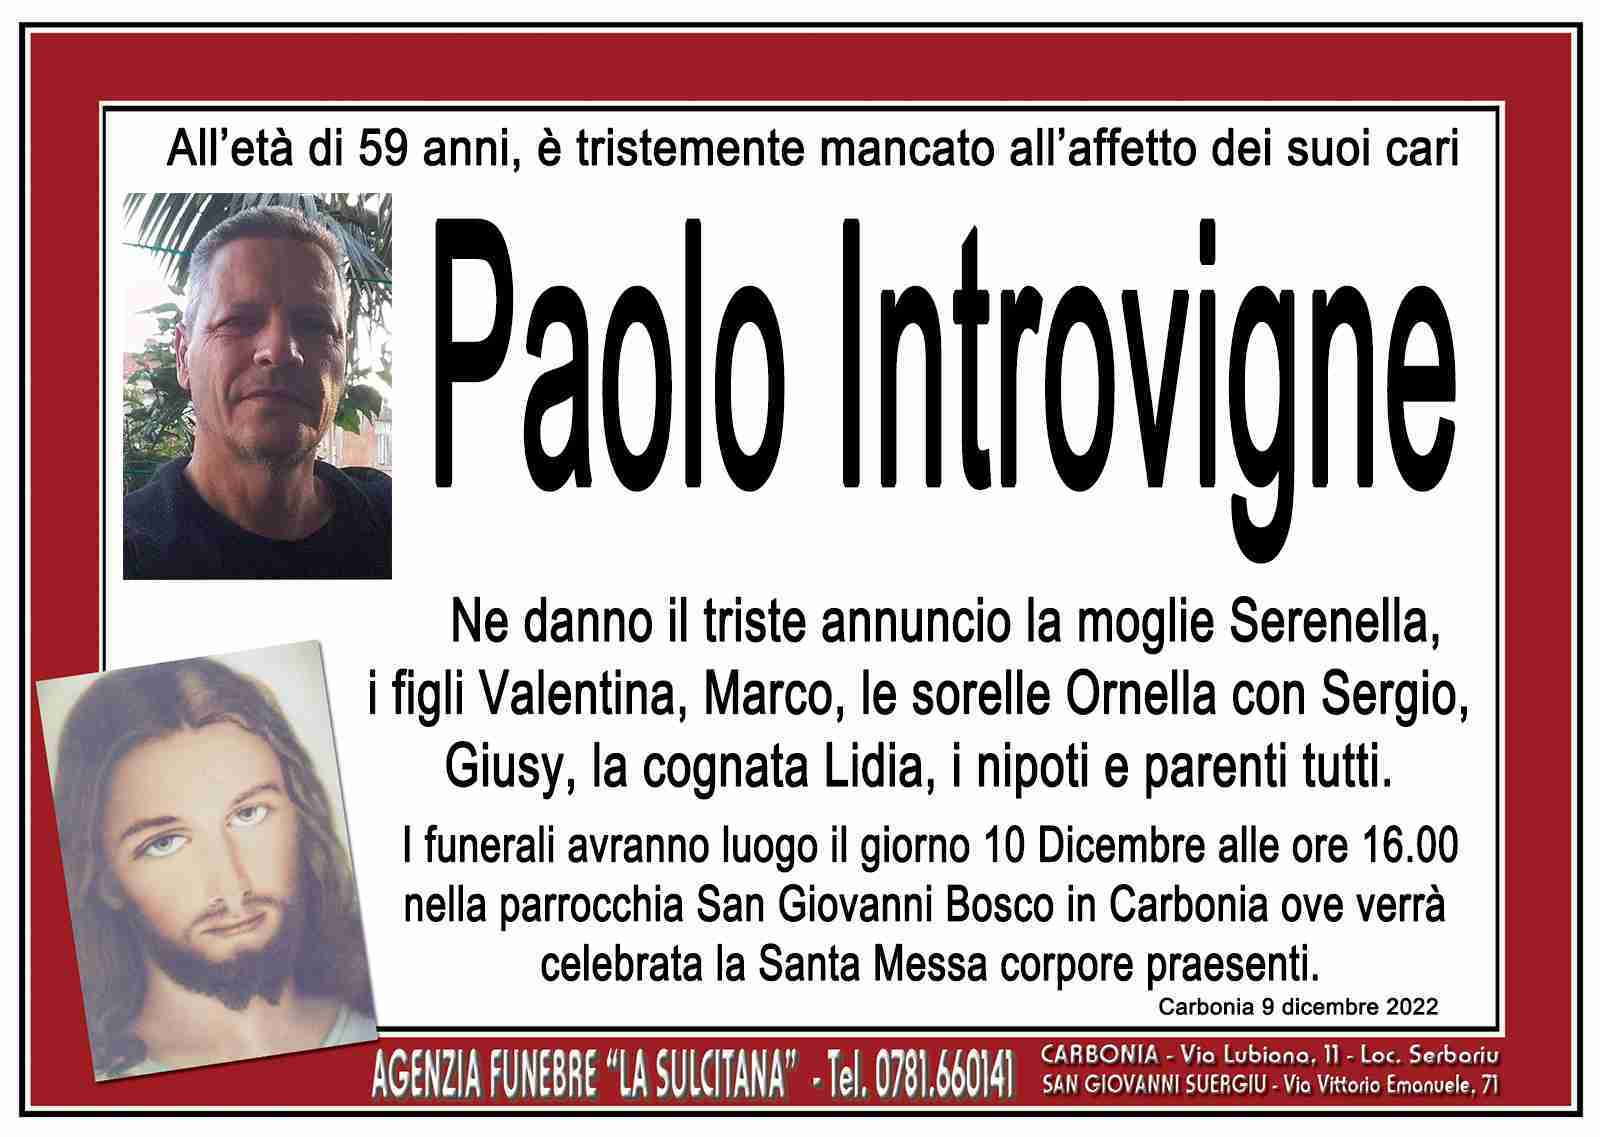 Paolo Introvigne